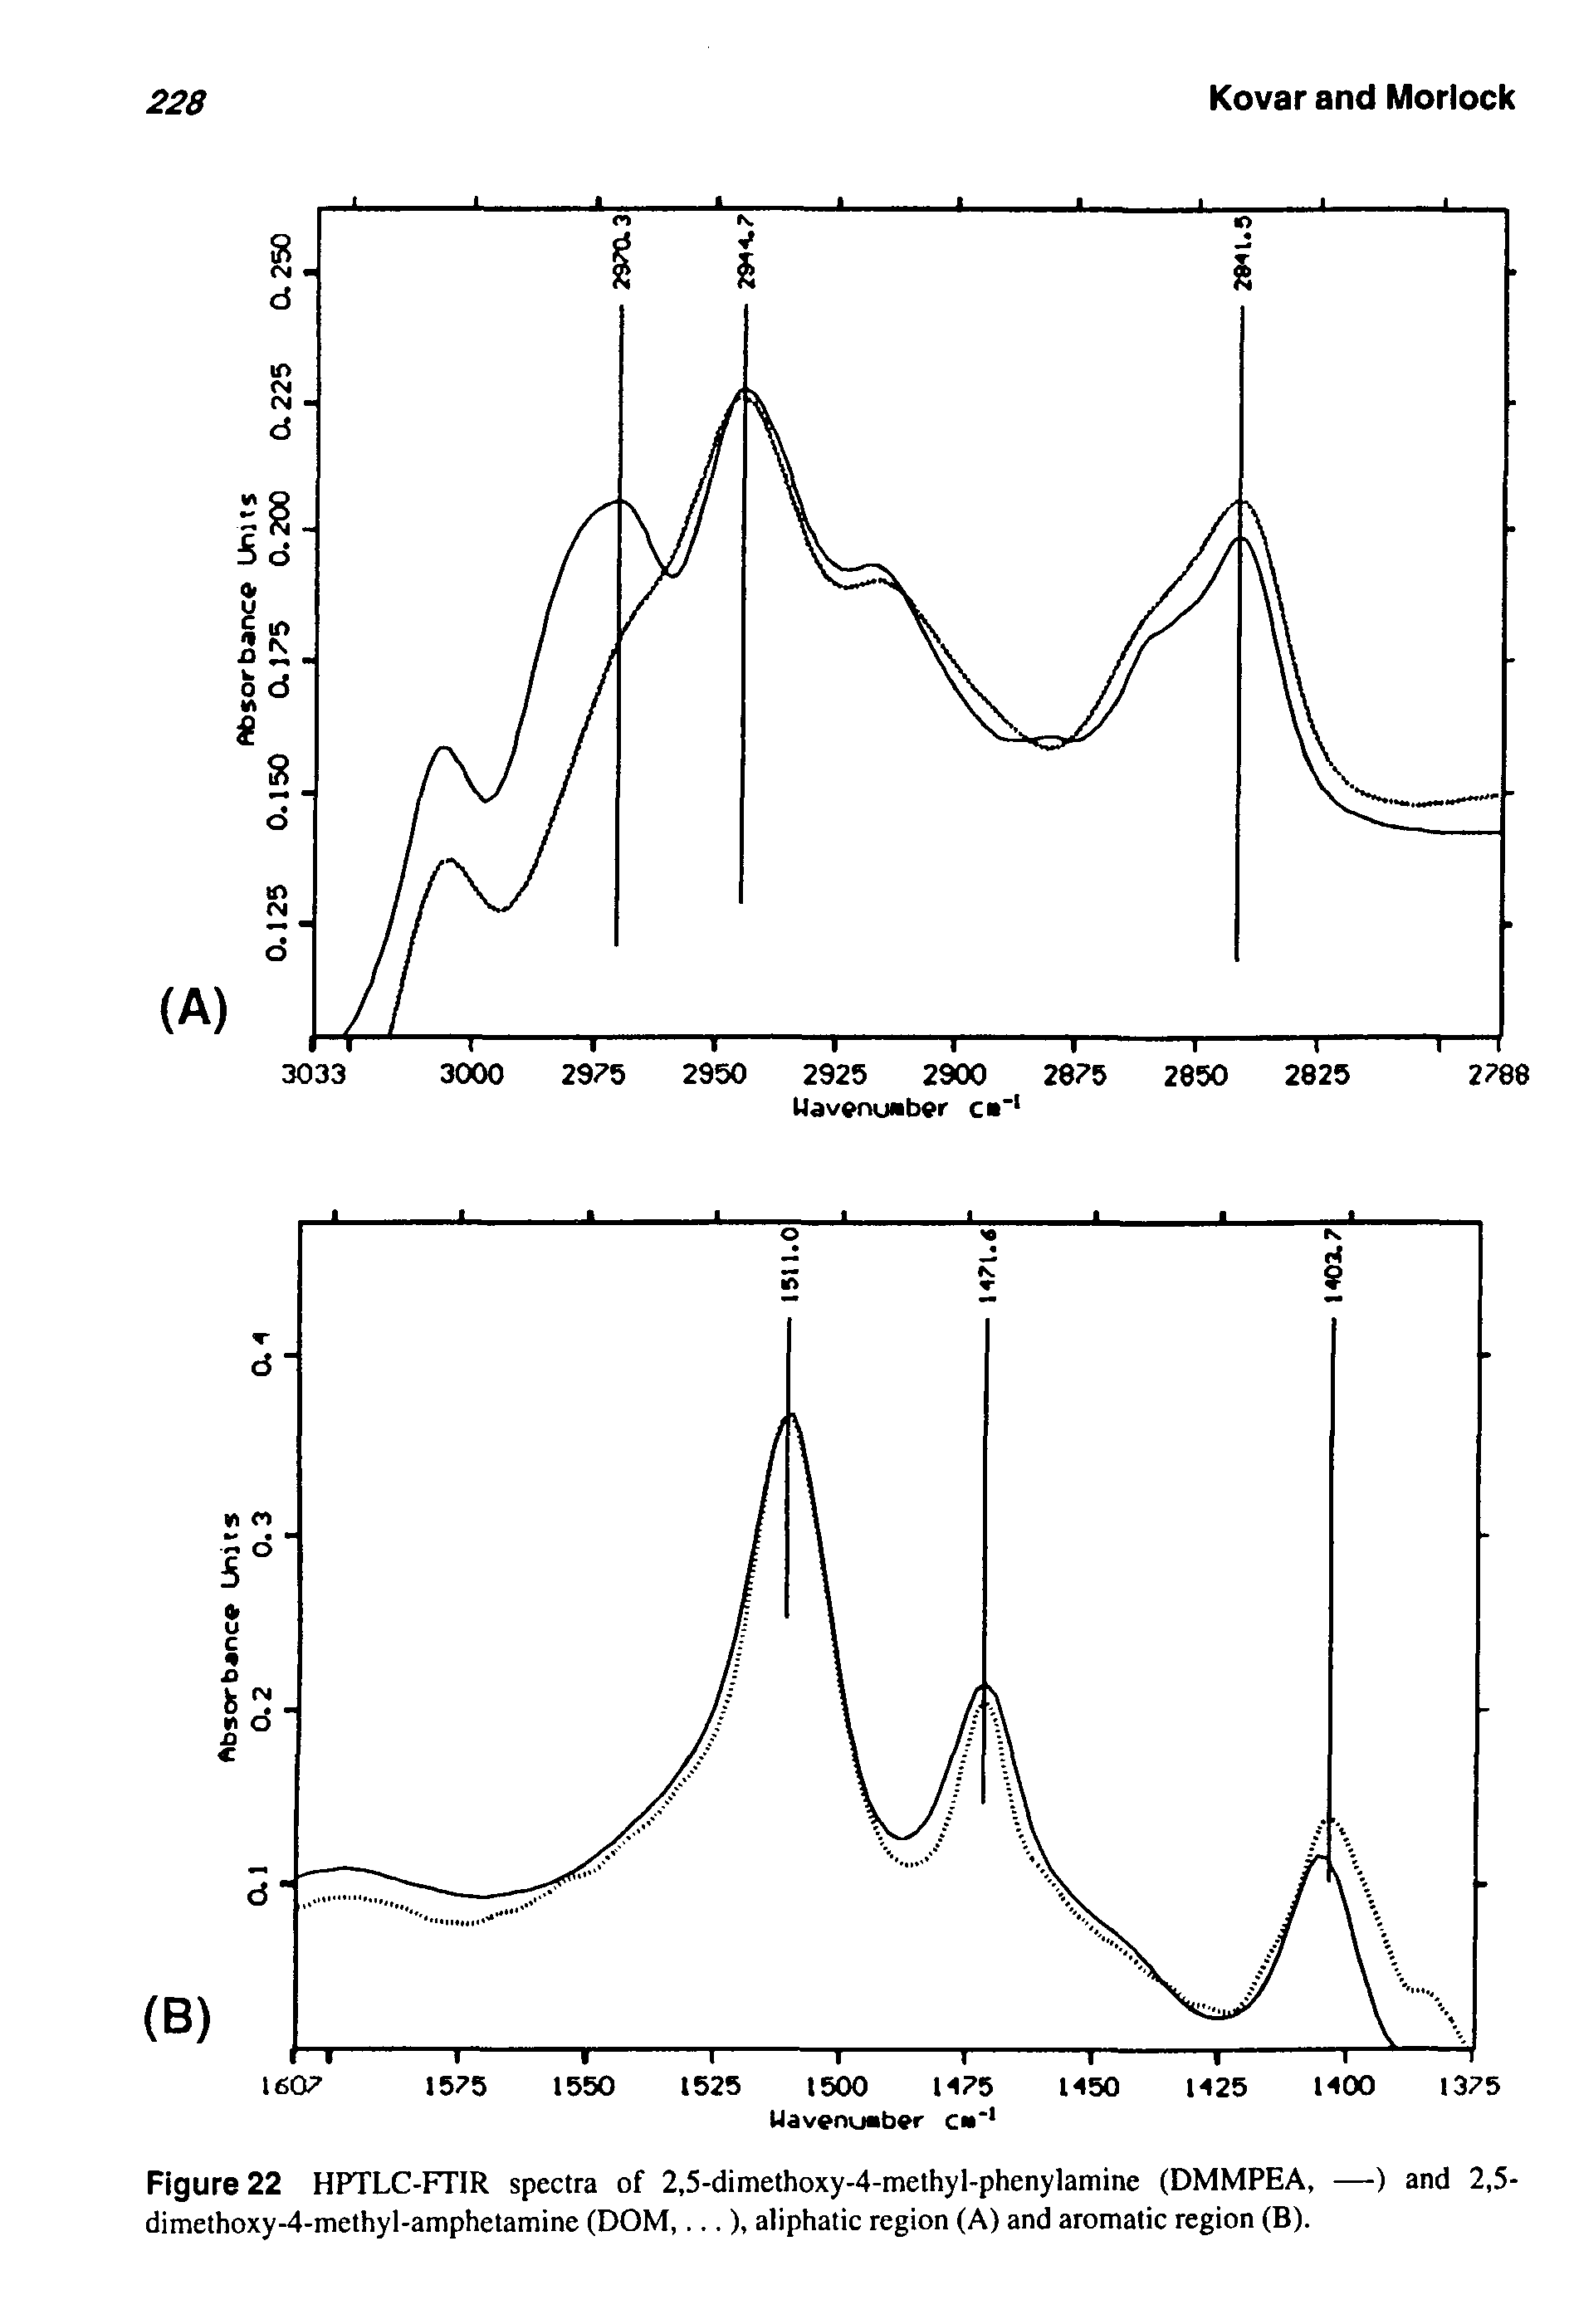 Figure 22 HPTLC-FTIR spectra of 2,5-dimethoxy-4-methyl-phenylamine (DMMPEA, —) and 2,5-dimethoxy-4-methyl-amphetamine (DOM,...), aliphatic region (A) and aromatic region (B).